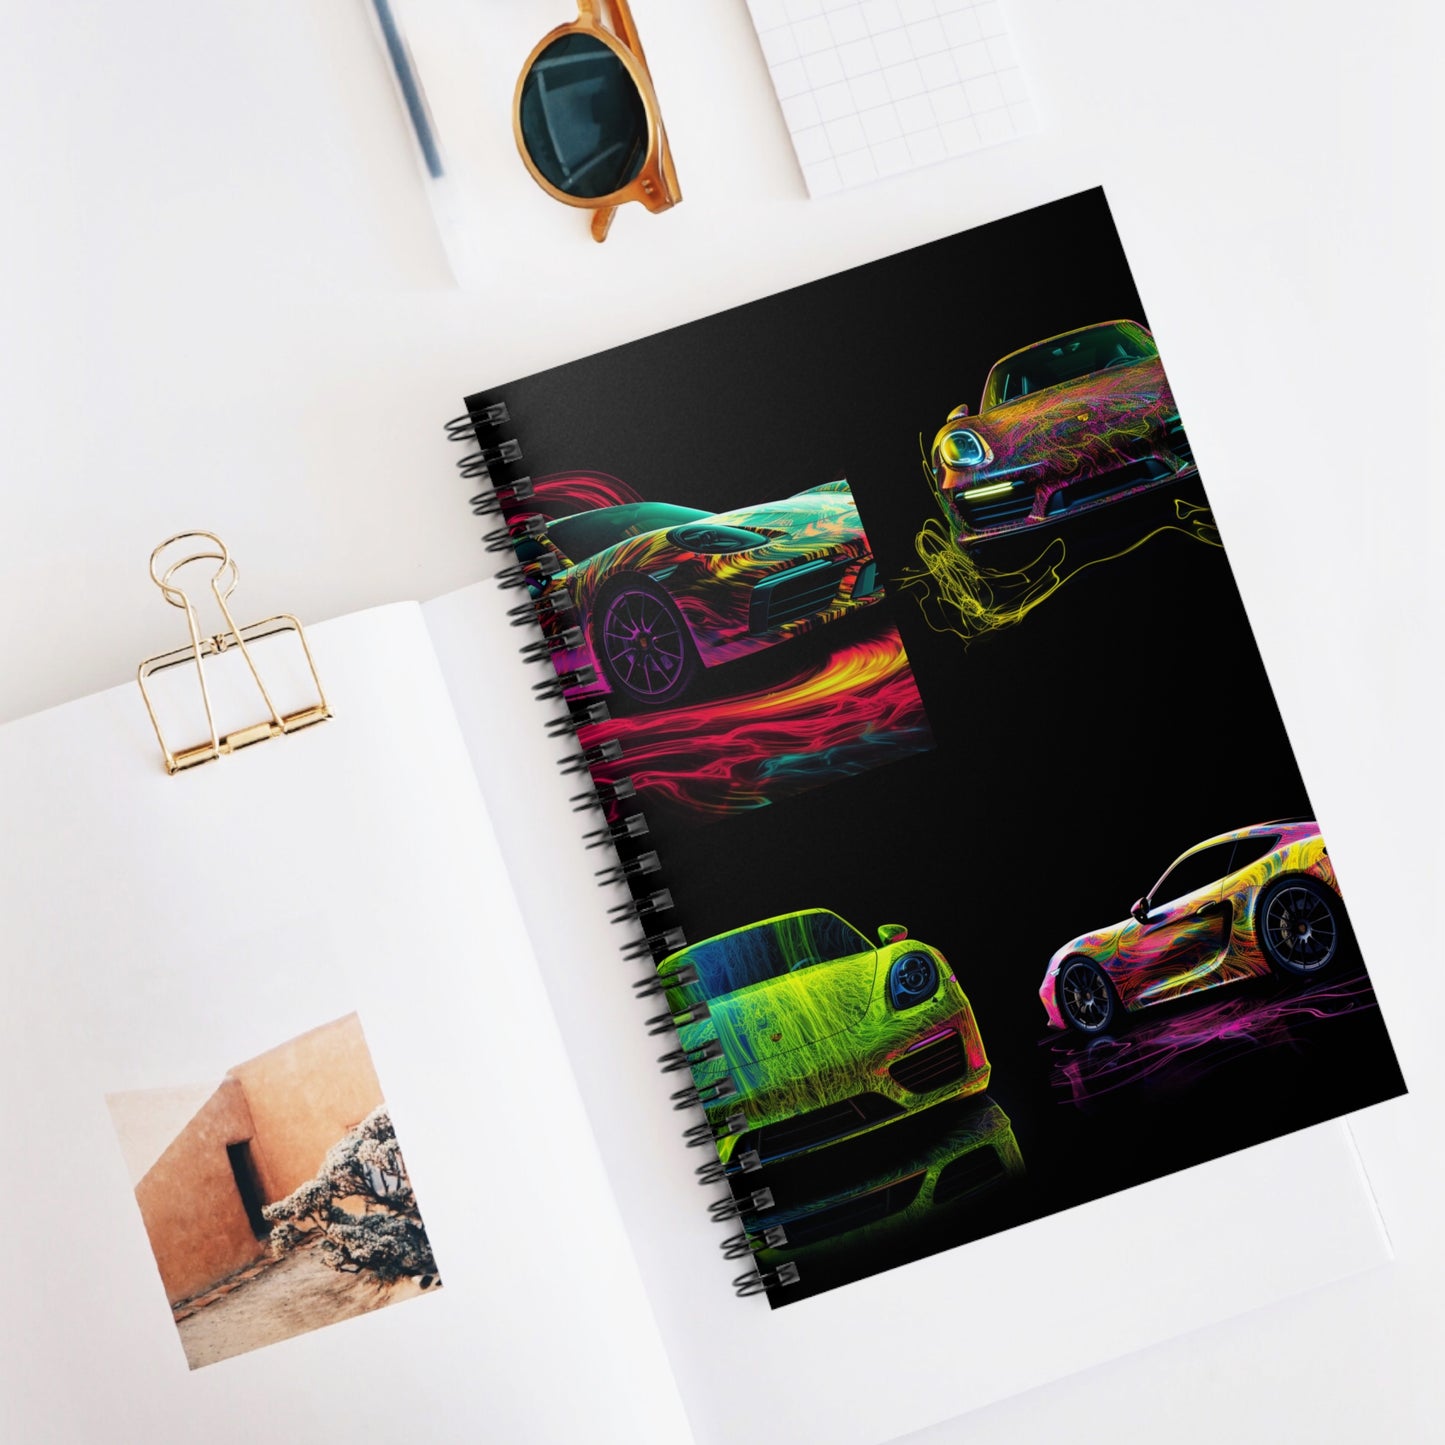 Spiral Notebook - Ruled Line Porsche Flair 5